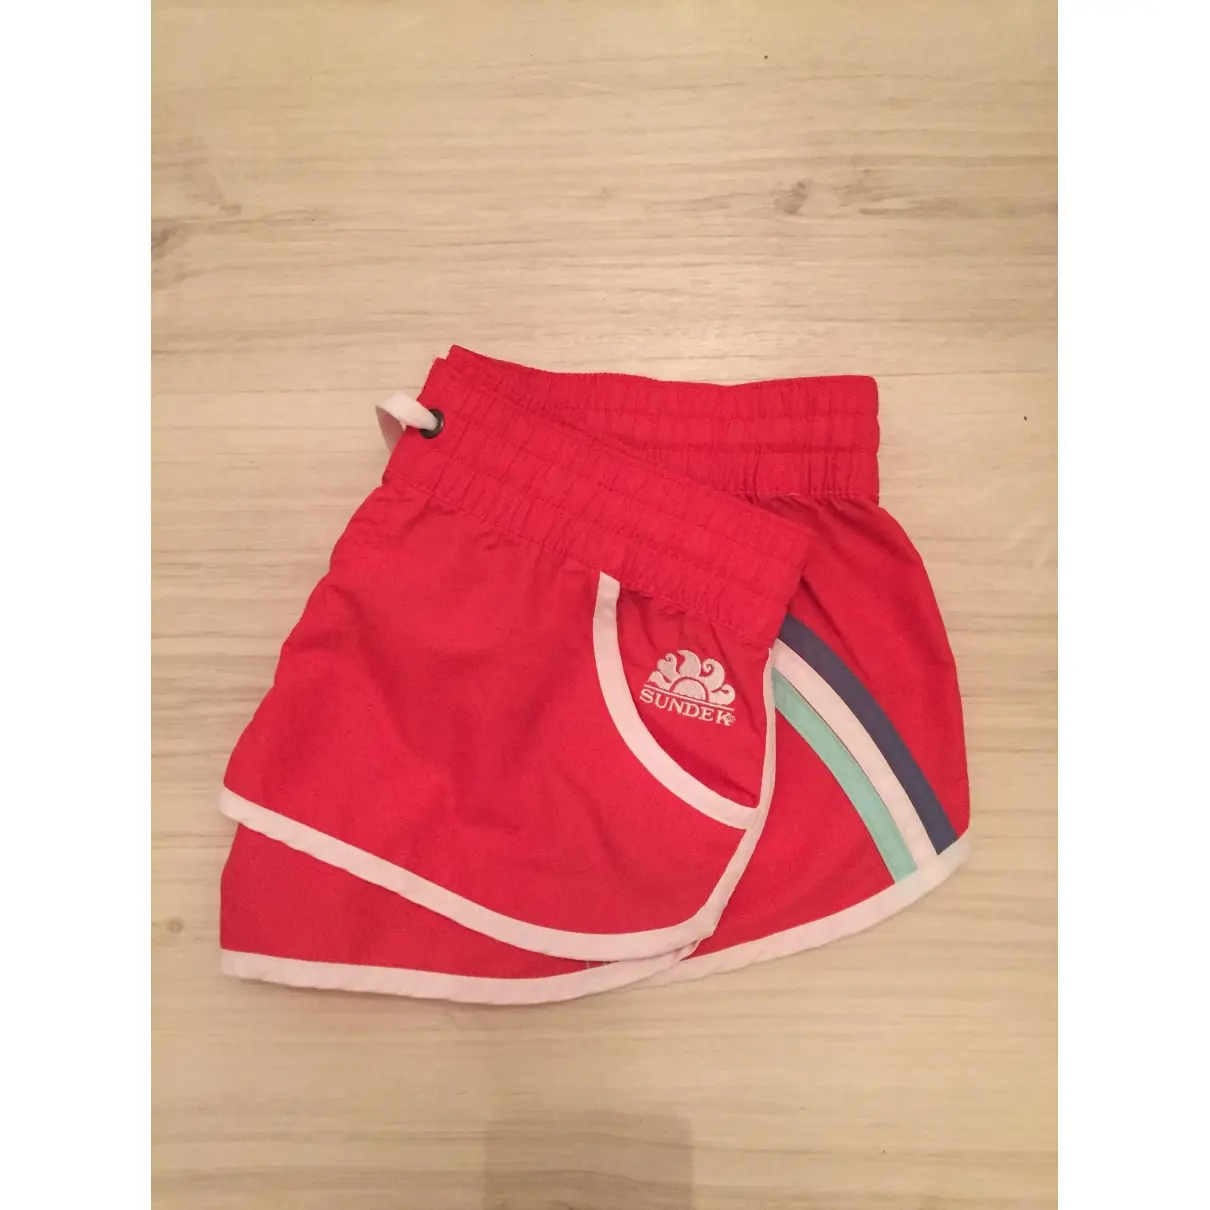 Sundek Shorts for sale